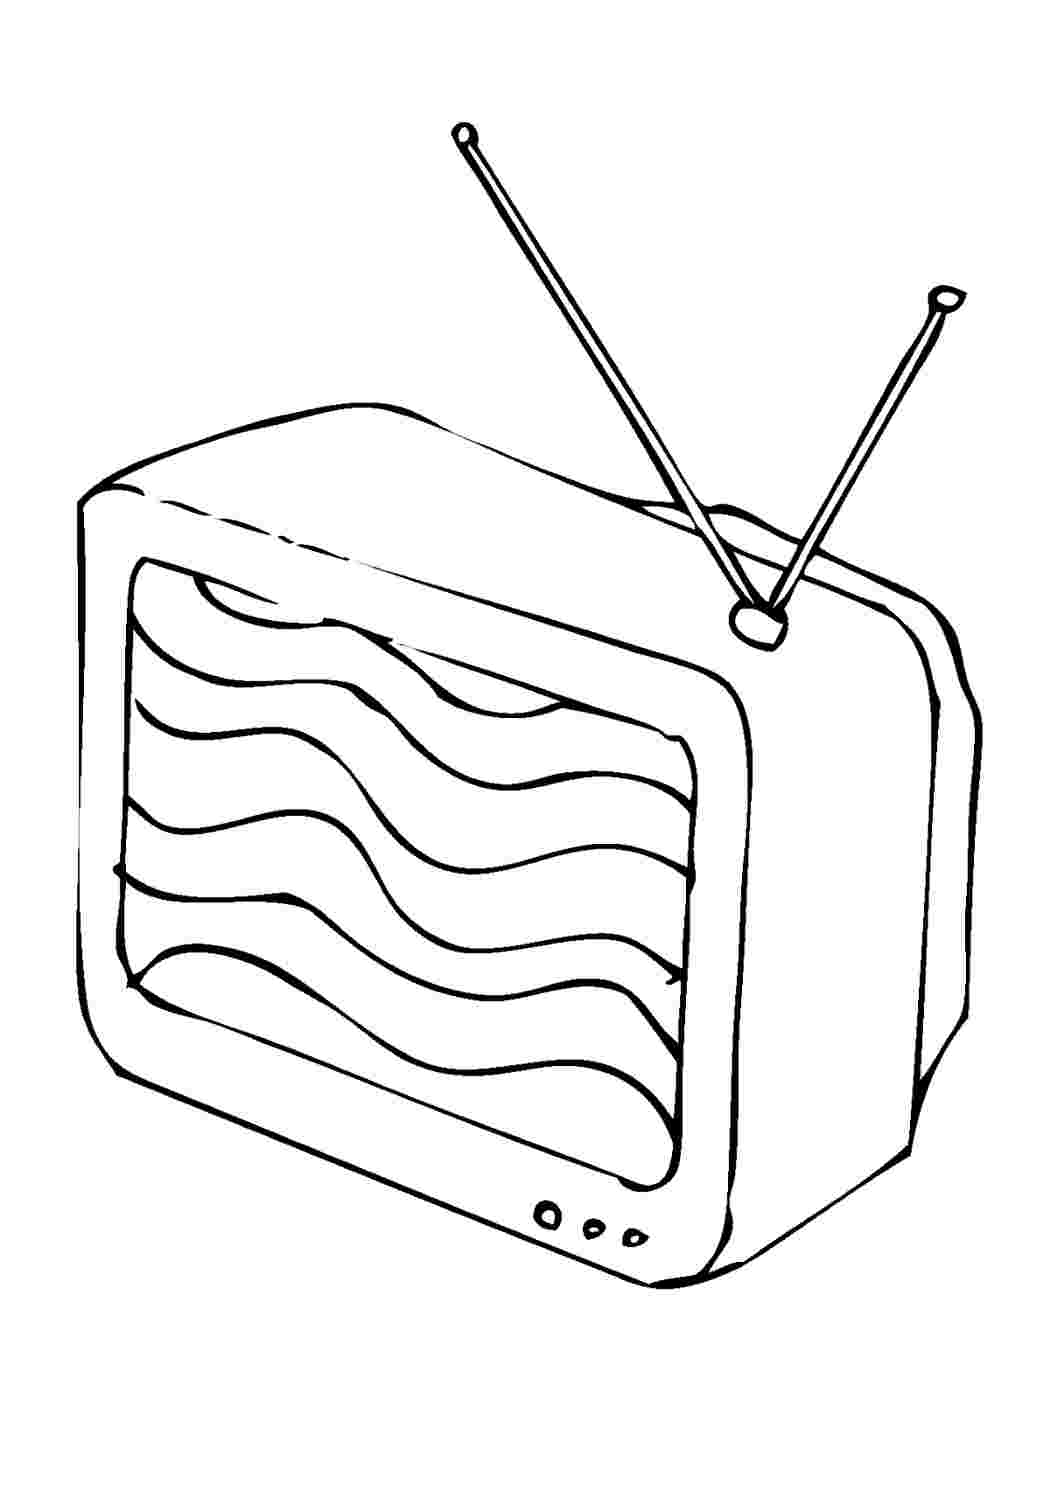 Телевизор раскраска для детей